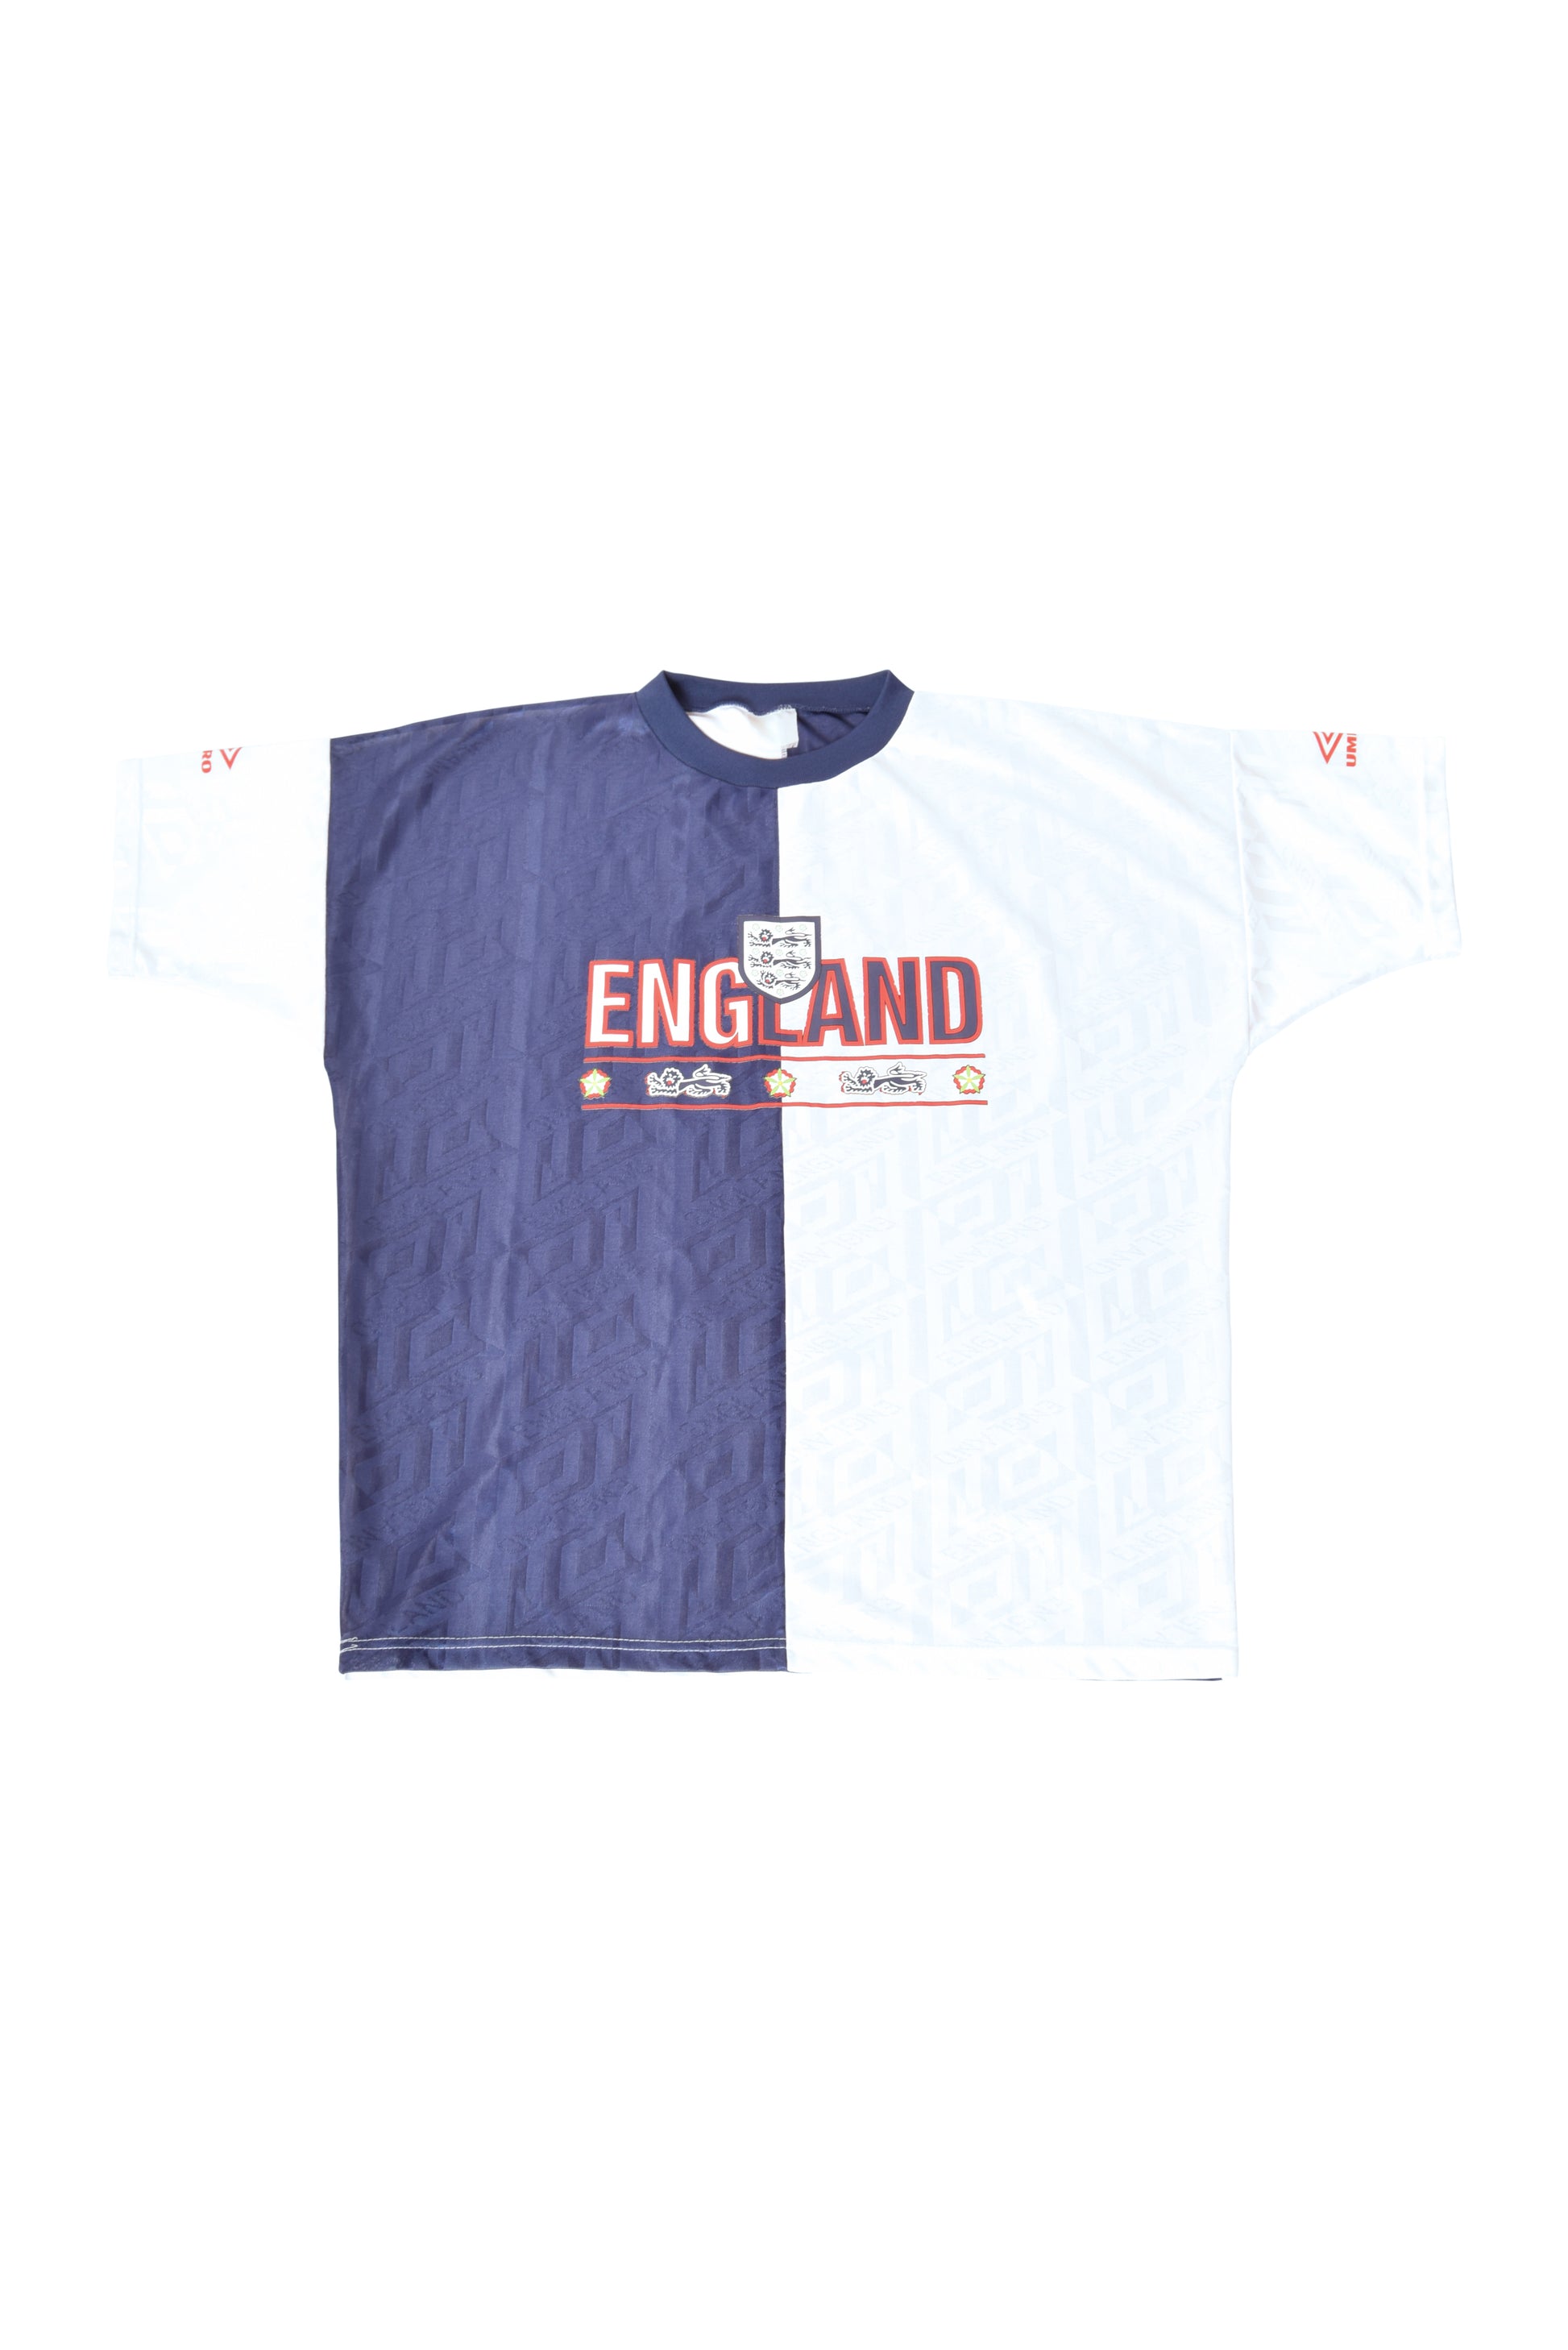 England Umbro 1994-1995 Training White Blue Size L-XL